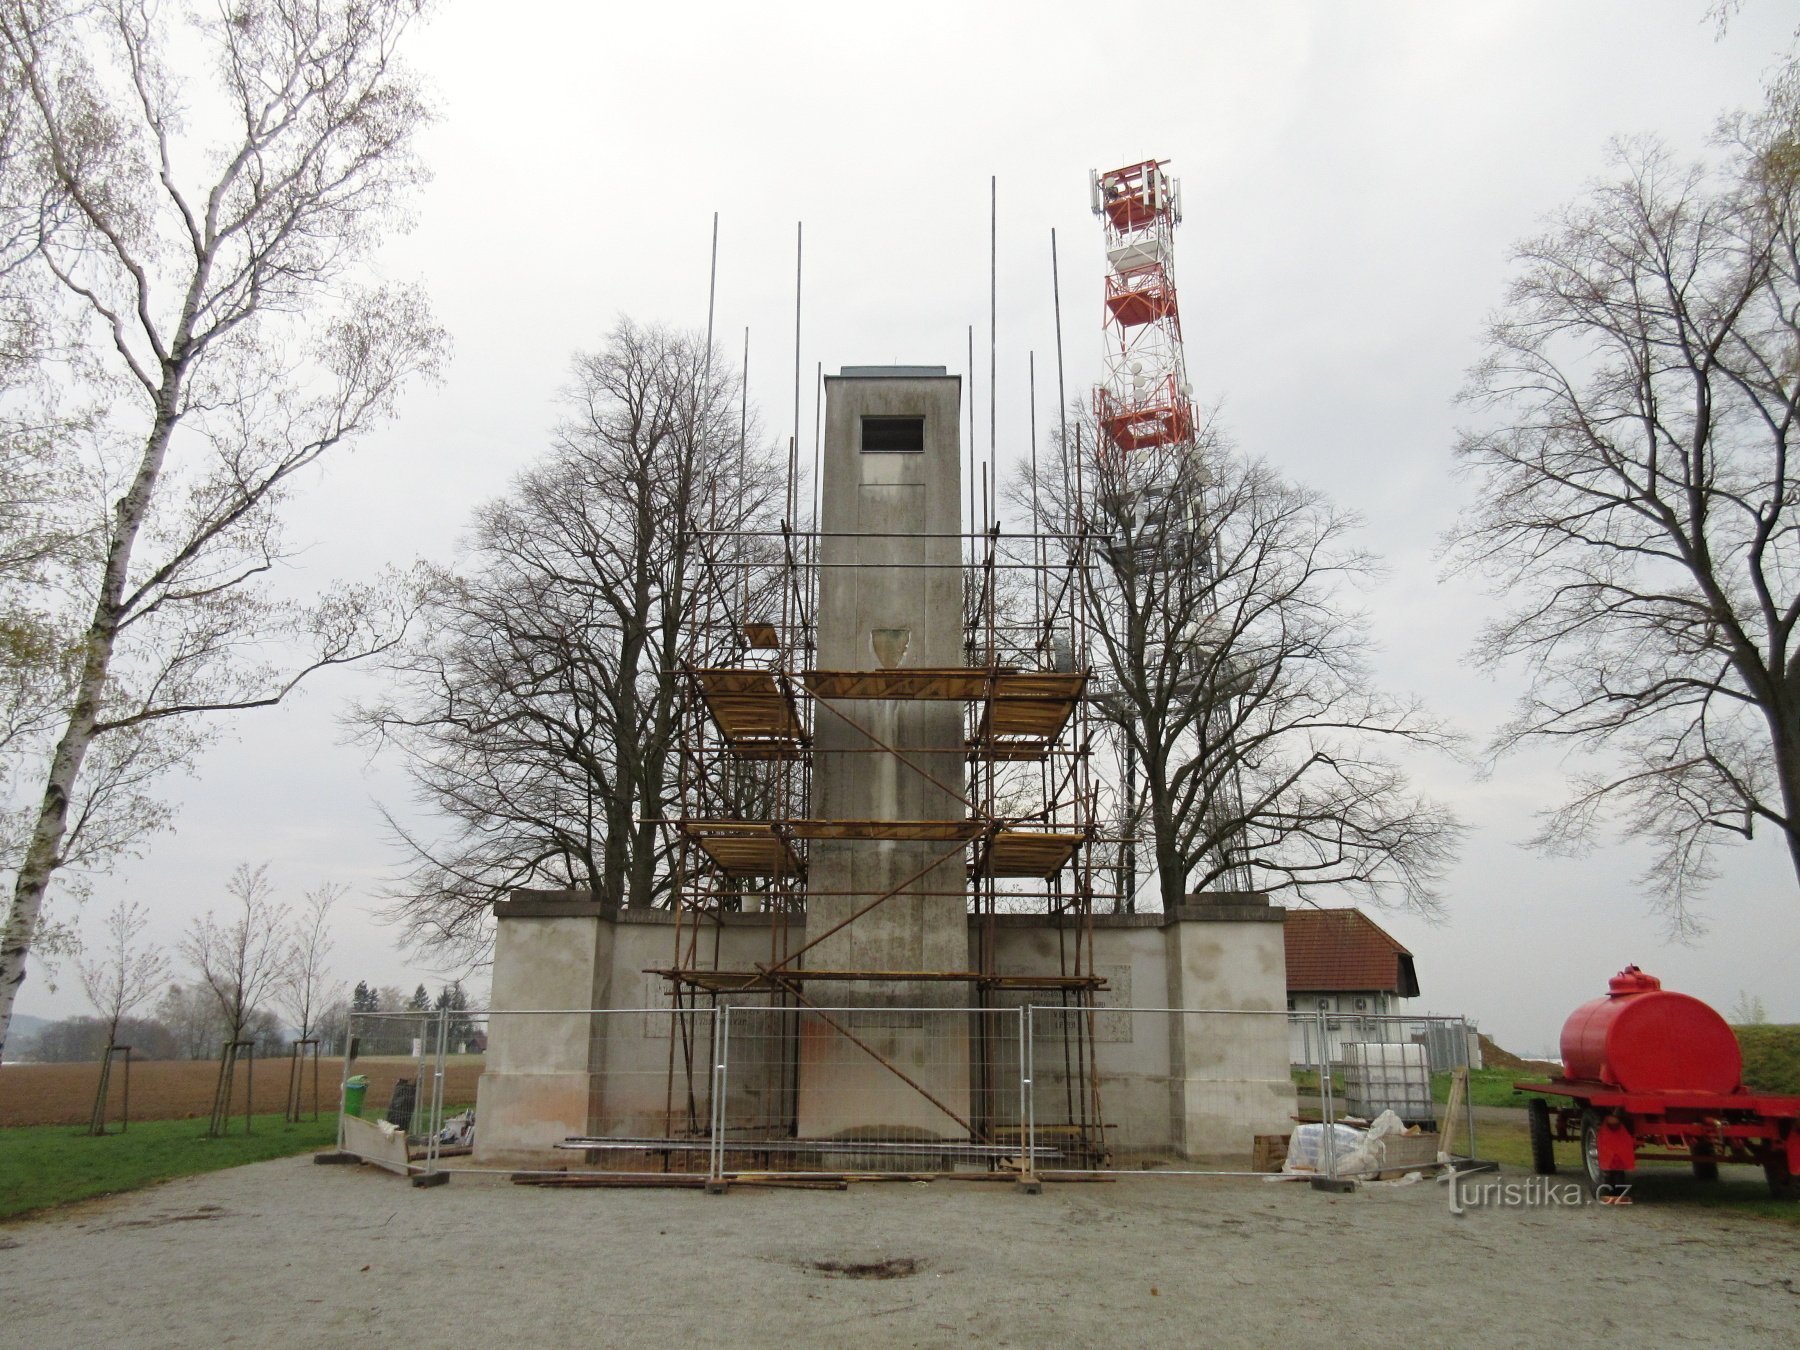 Μνημείο Mandava και πύργος παρατήρησης κοντά στο Sulic